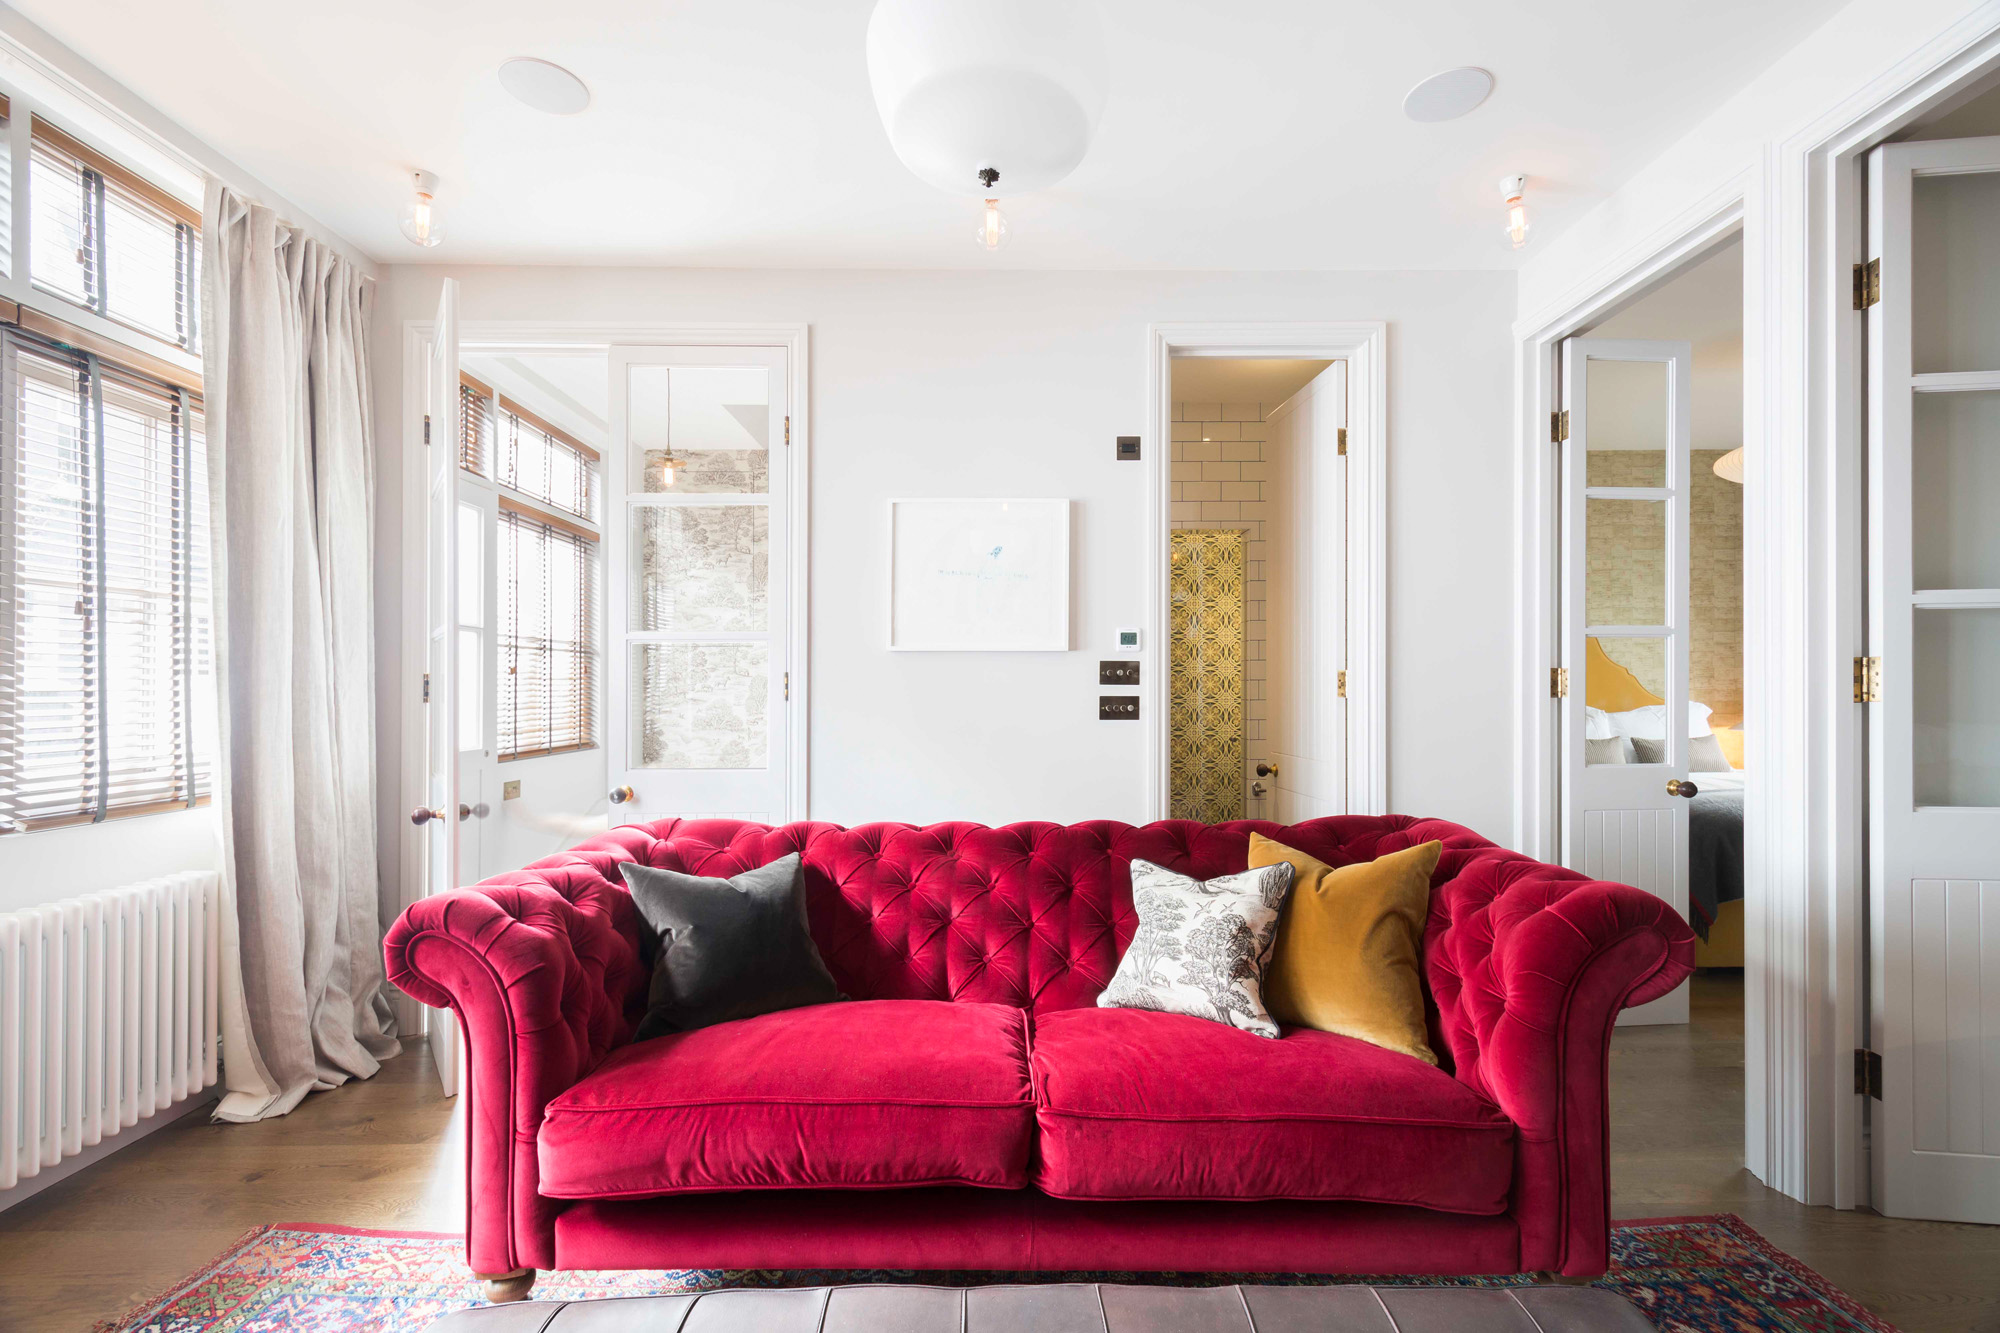 For Sale: St Luke's Mews Notting Hill W11 bright red velvet sofa in reception room